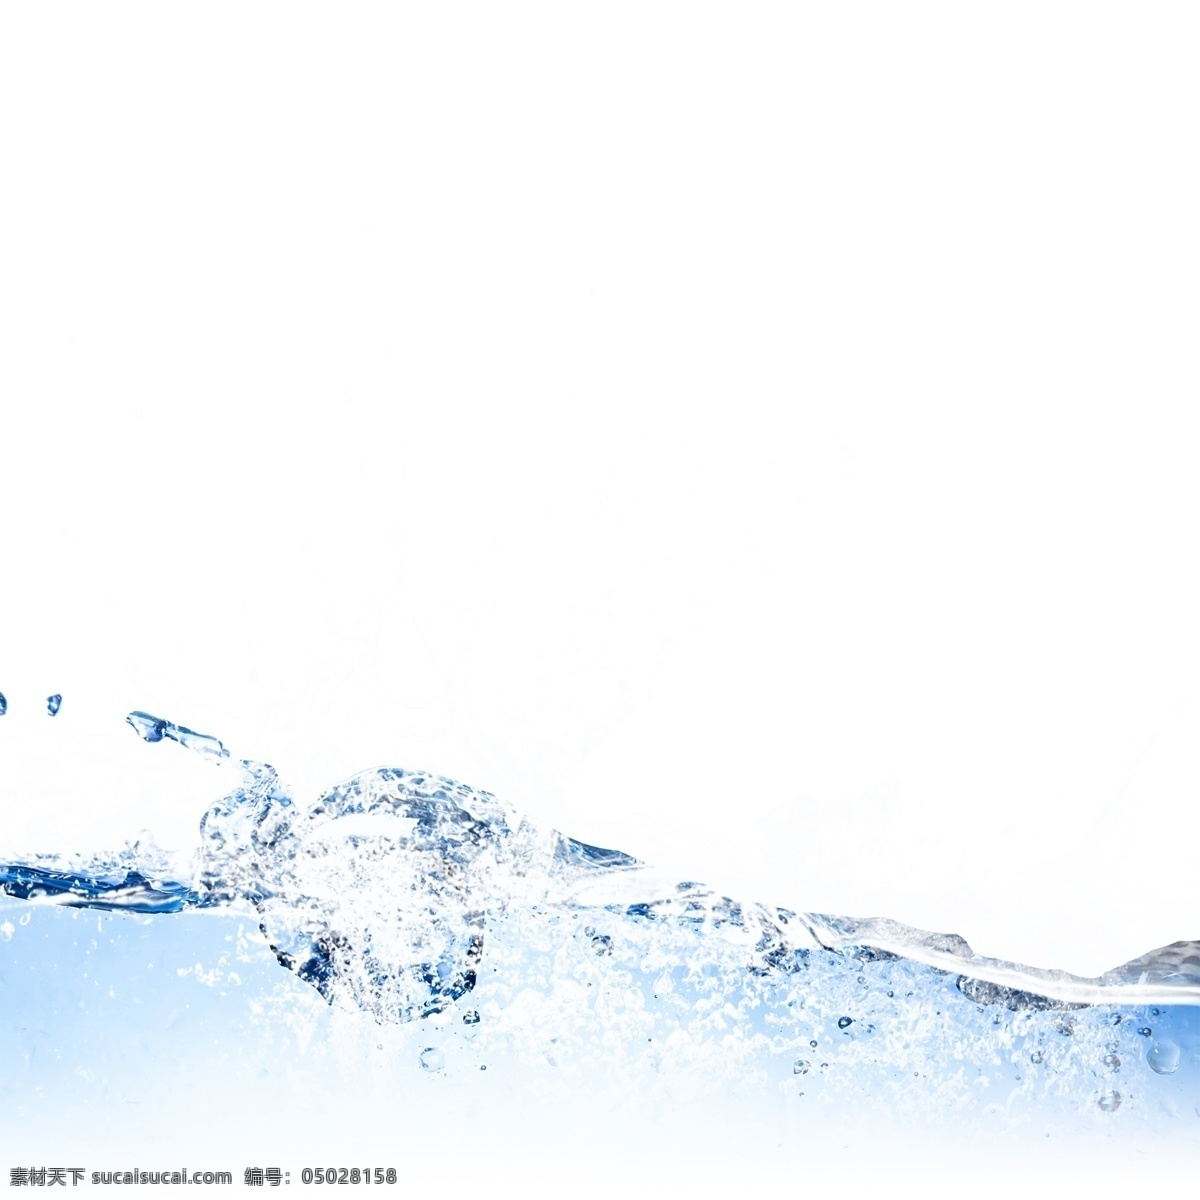 水 流水 波纹 水滴 元素 水波纹 白色 水花 喷溅 动感 水珠 蓝色水花 晶莹